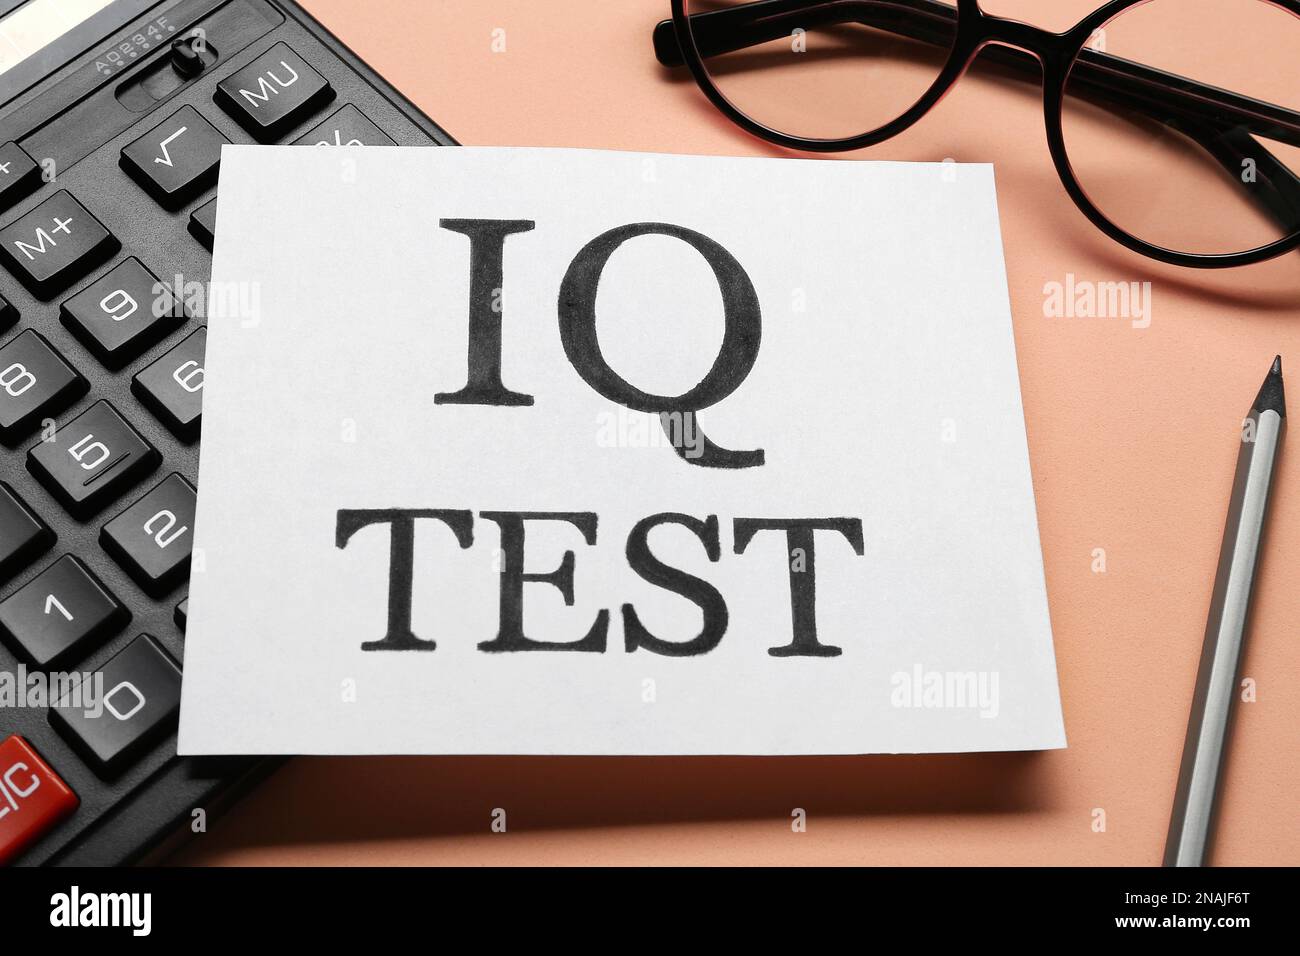 Nota con testo IQ Test, calcolatrice, occhiali e matita su sfondo corallo, primo piano Foto Stock